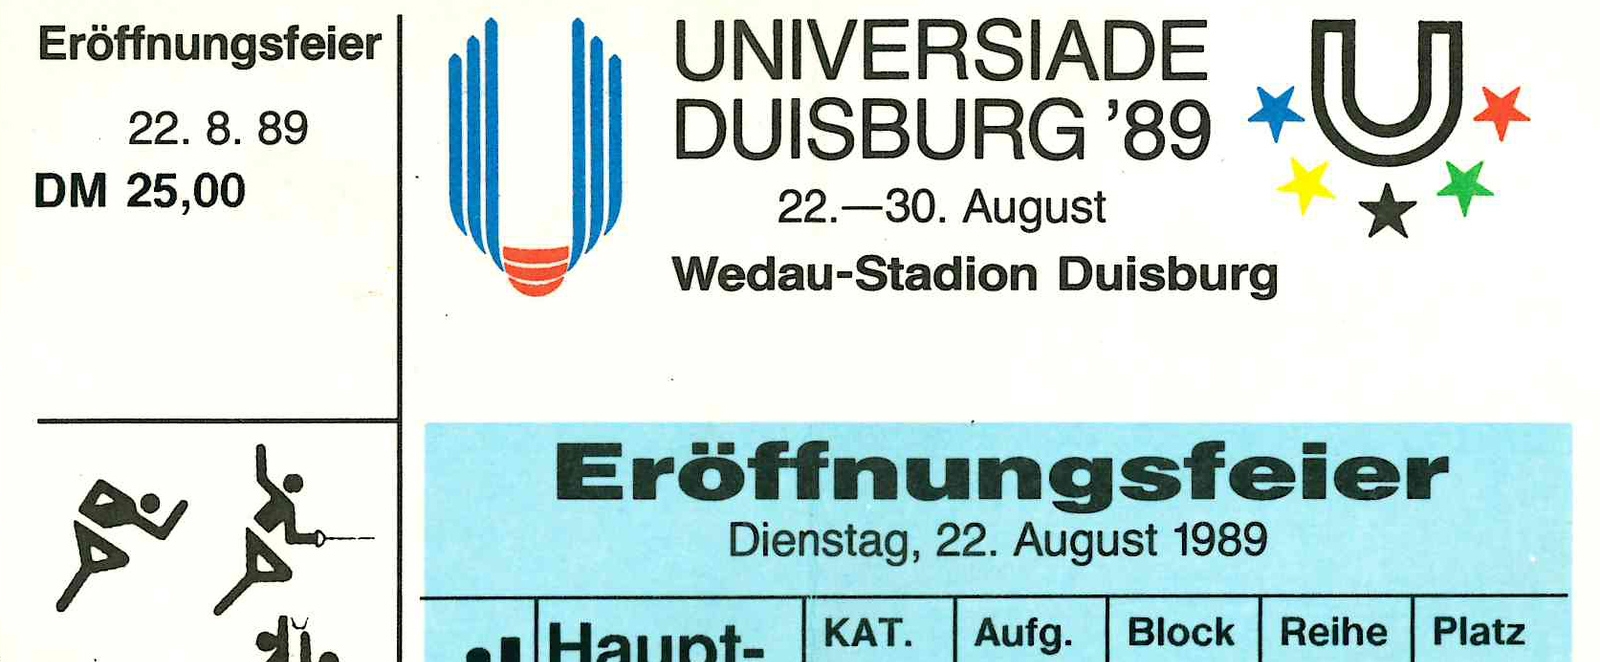 Eintrittskarte zur Eröffnungsfeier der Universiade 1989